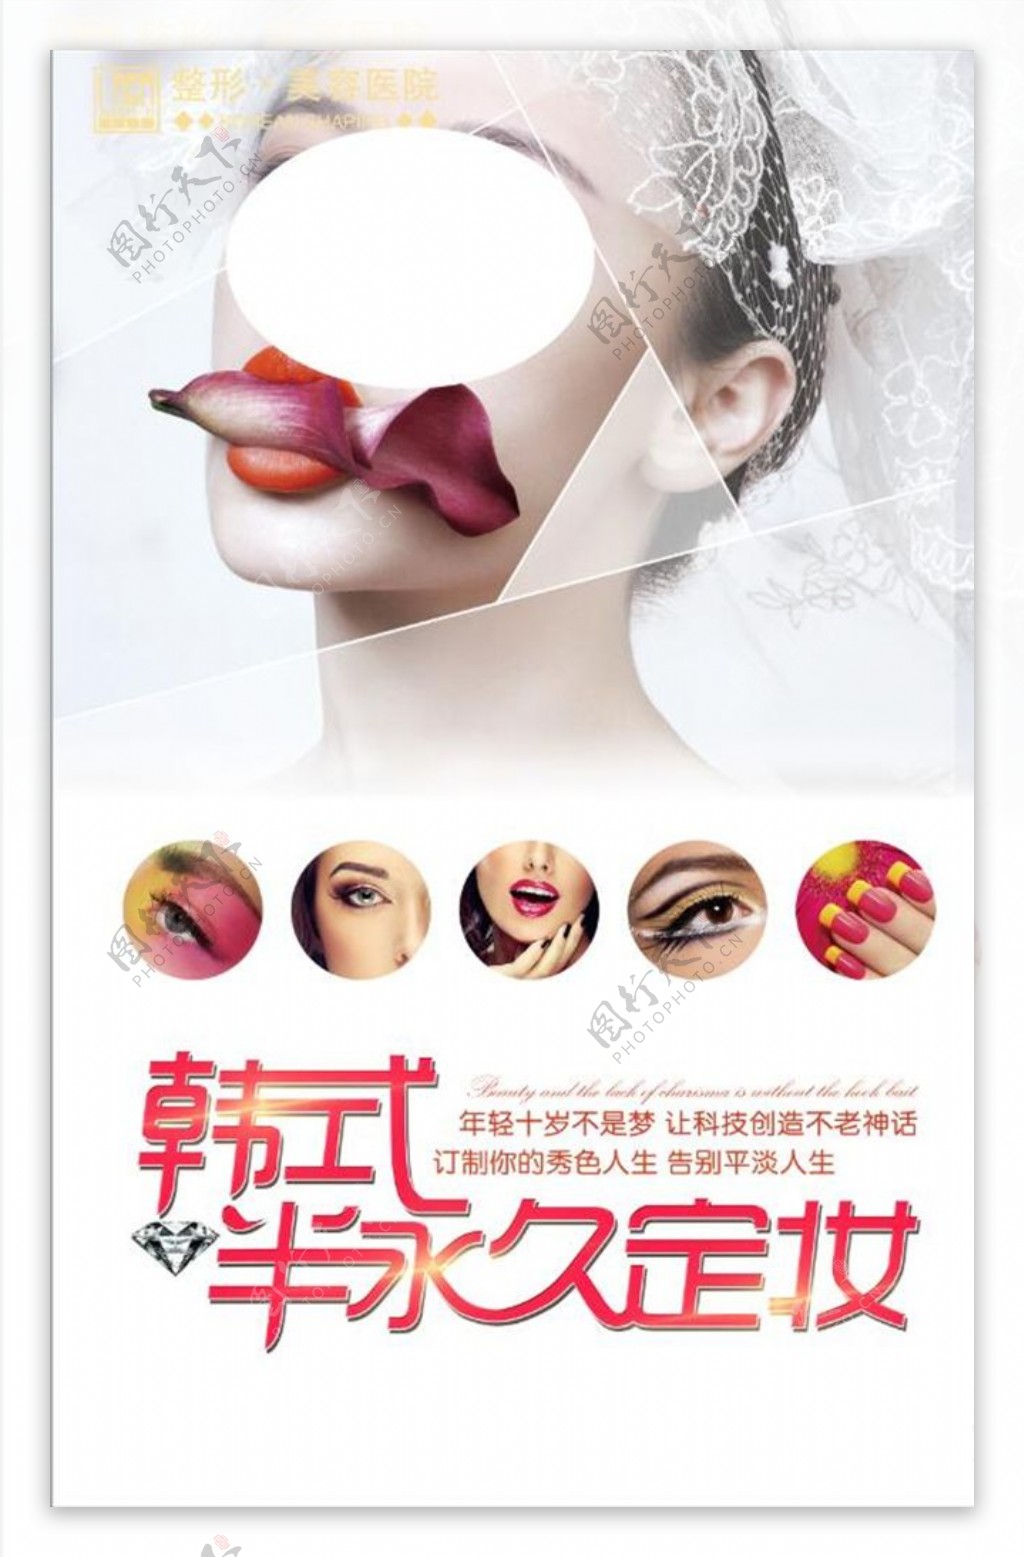 韩式半永久定妆海报设计